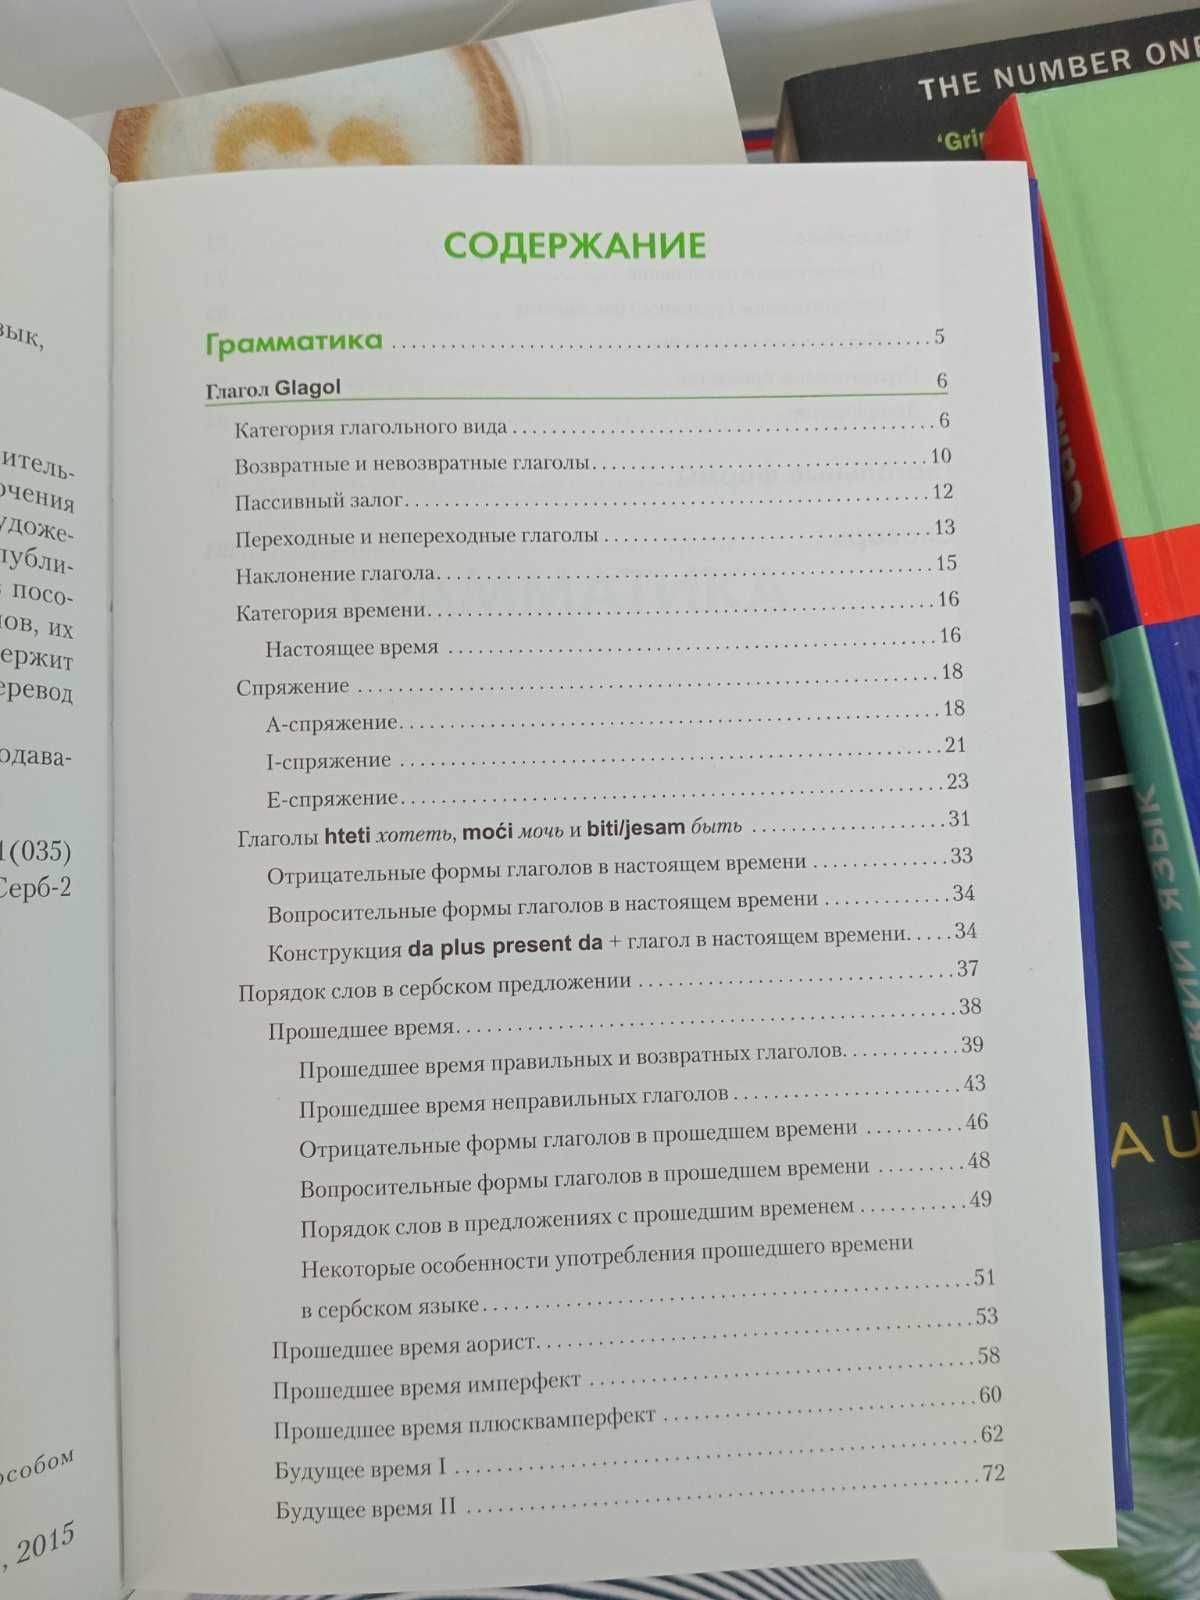 Книга "Сербский язык. Справочник по глаголам"